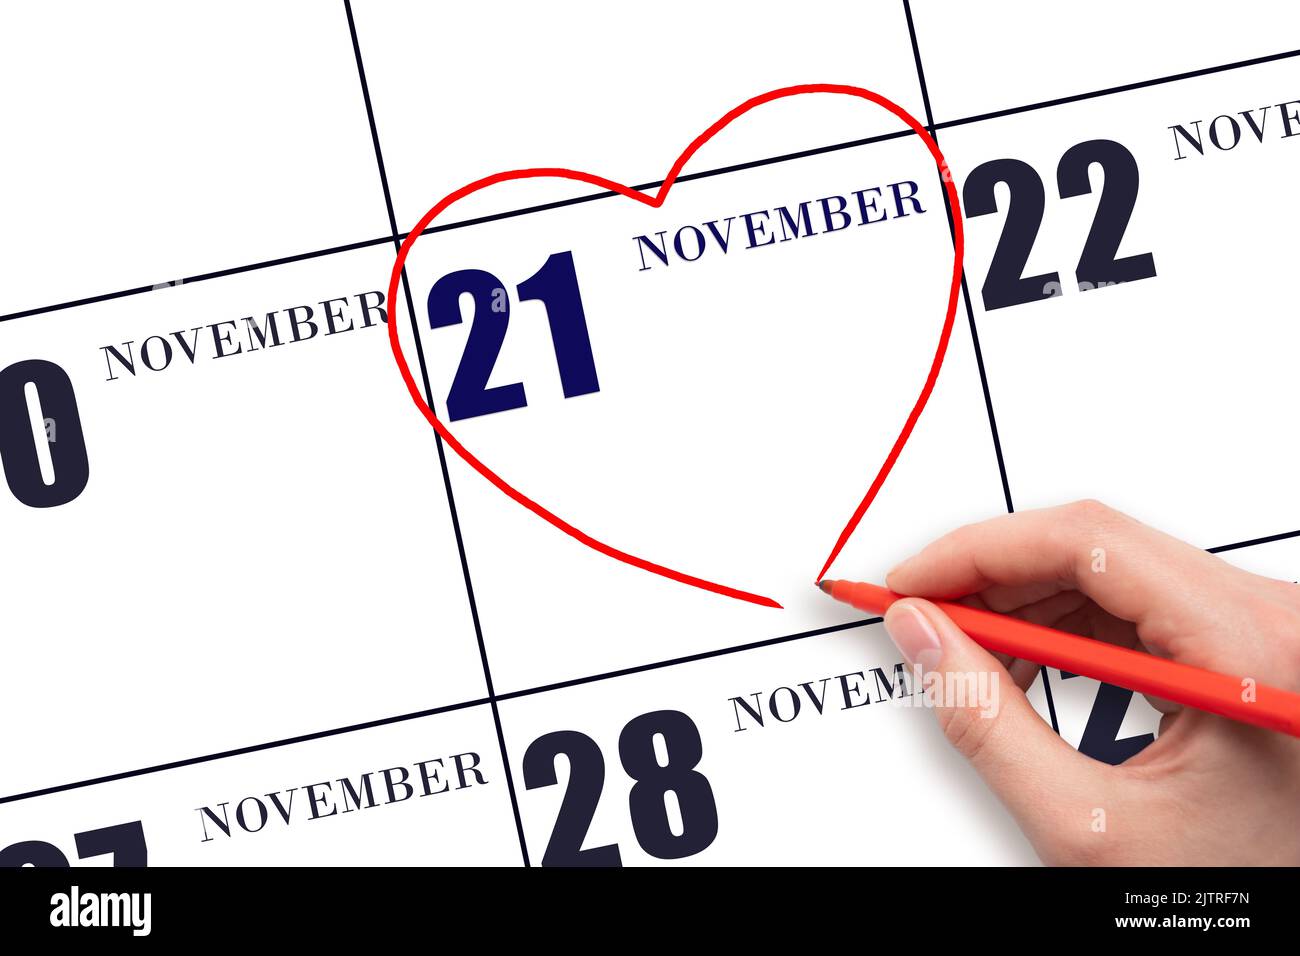 21st° giorno di novembre. La mano di una donna che disegna una forma a cuore rosso alla data di calendario del 21 novembre. Il cuore come simbolo dell'amore. Mese autunnale. Giorno del Foto Stock